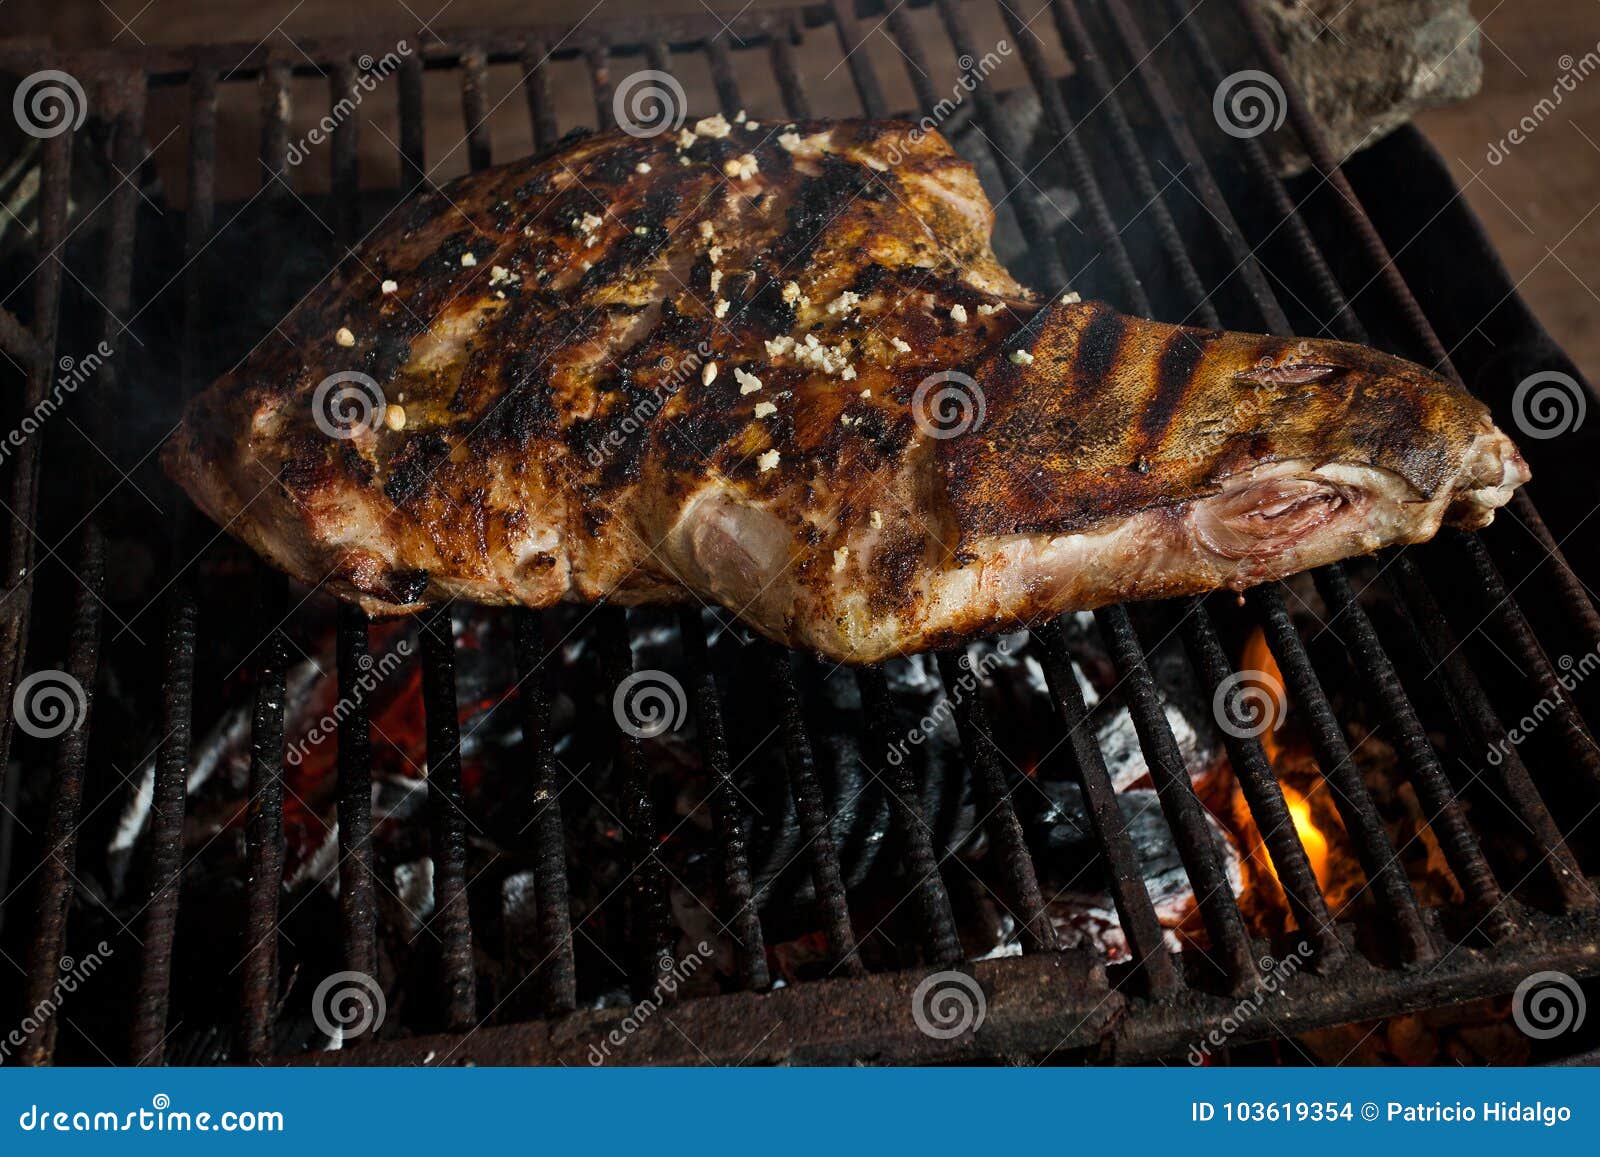 pork leg grilled